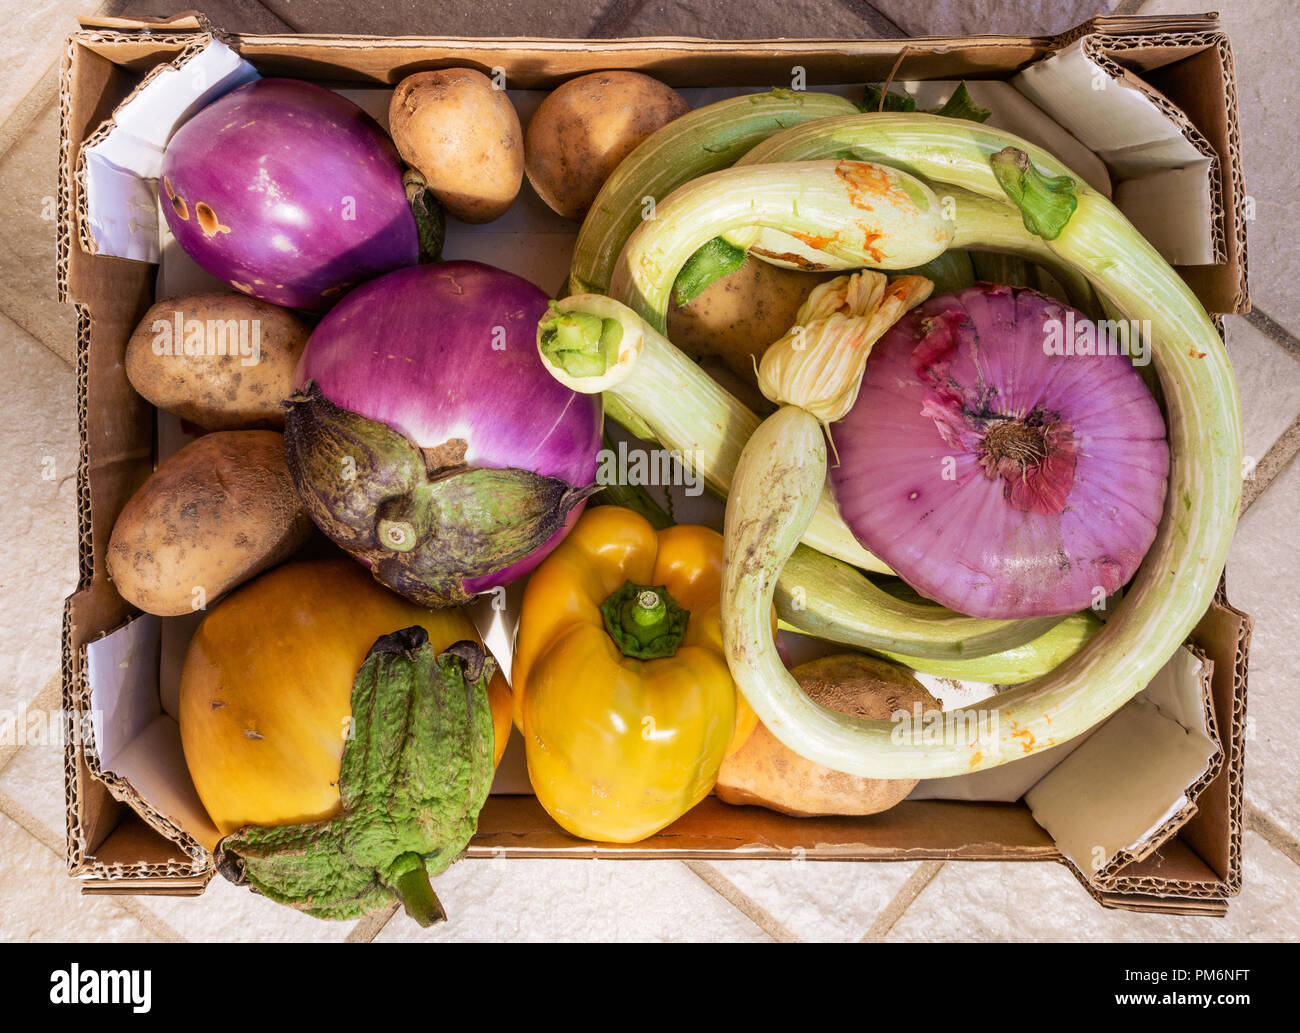 Rohes Gemüse, große reife Aubergine, Auberginen, Zwiebeln, Kartoffeln, Paprika, Gelb, Grün und Violett in einer Box Stockfoto